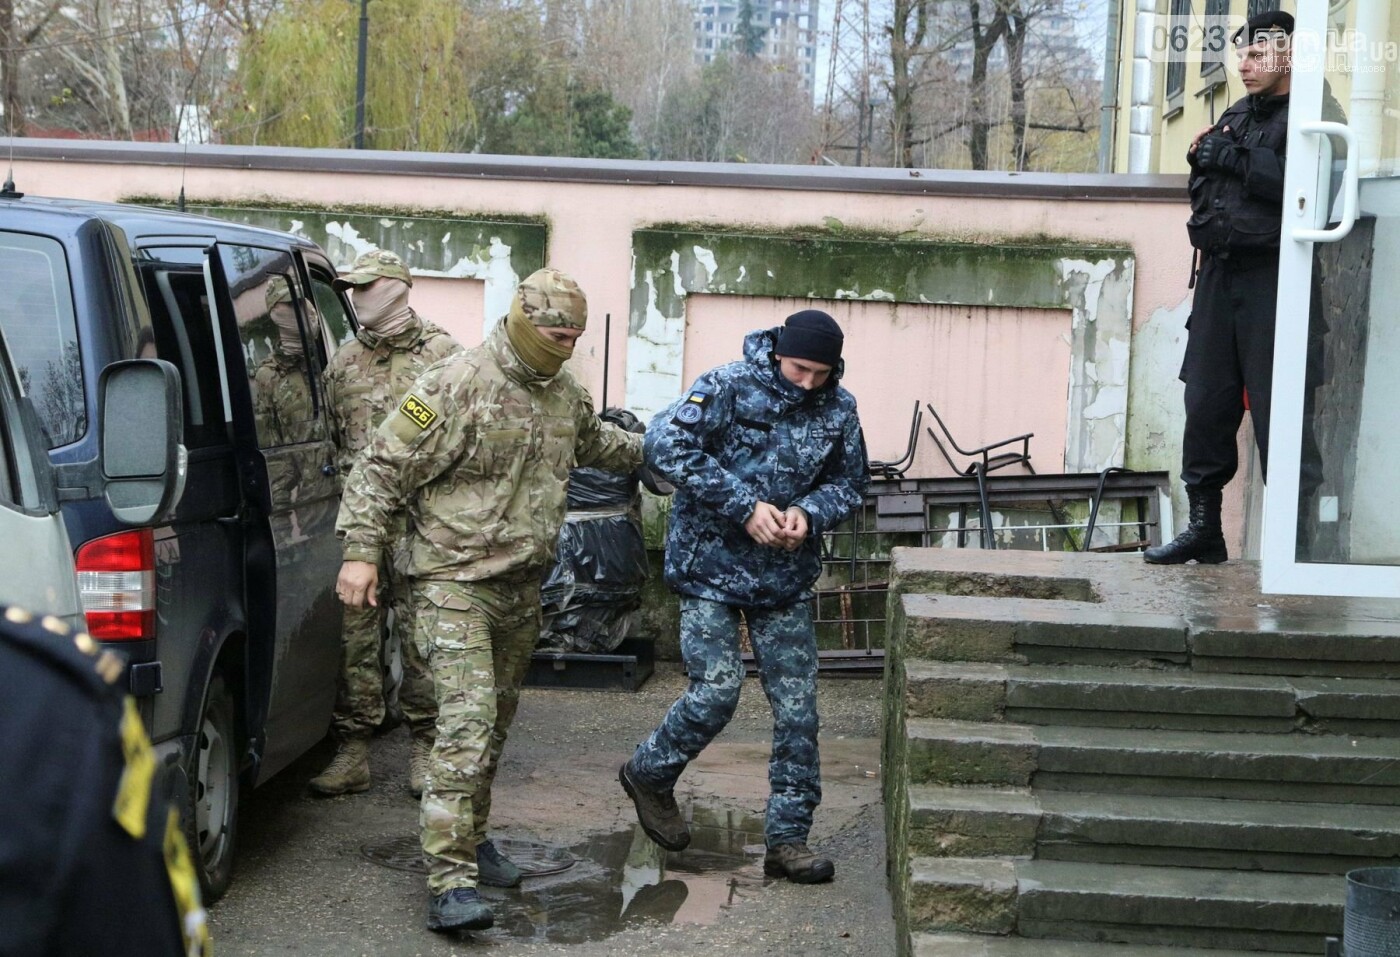 Глава ВМС Украины предложил обменять себя на пленных Россией моряков, фото-1